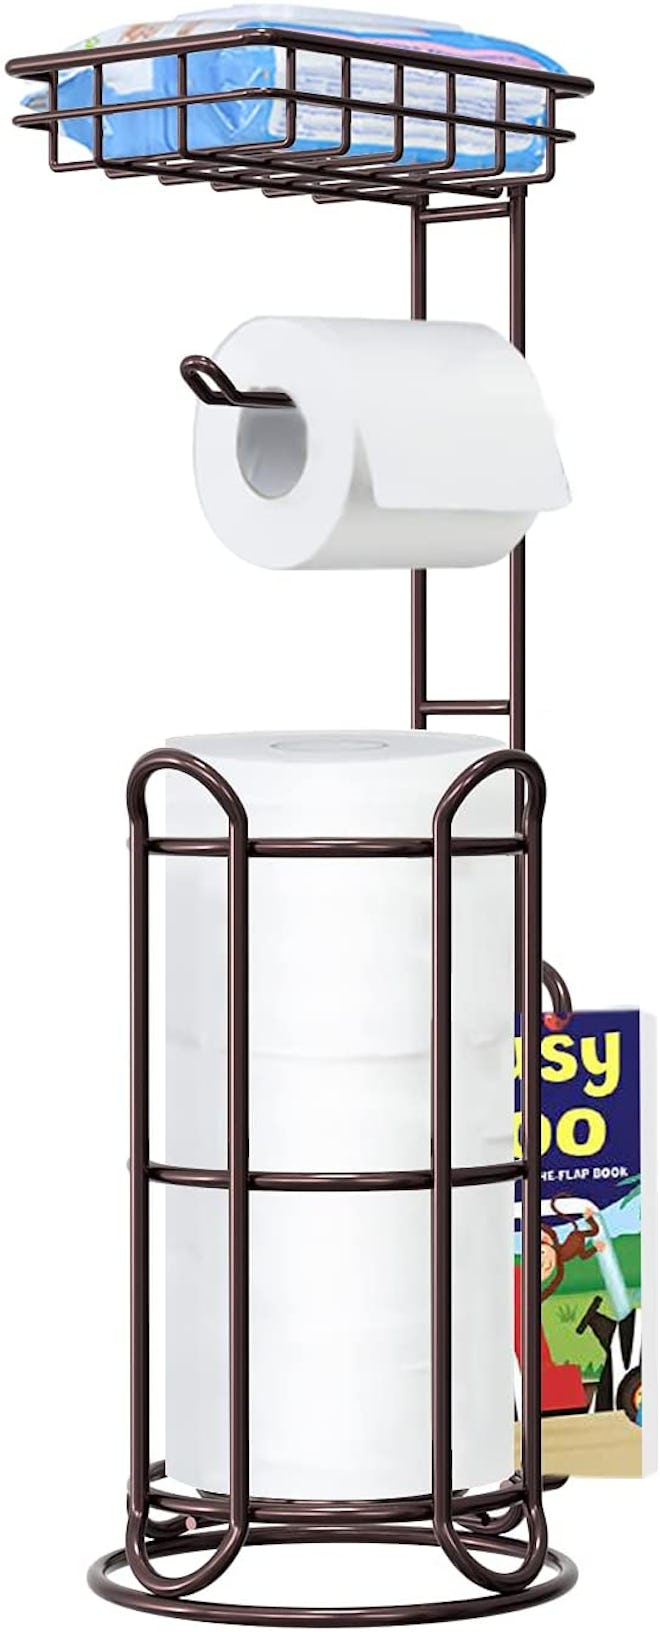 TreeLen Toilet Paper Holder Stand